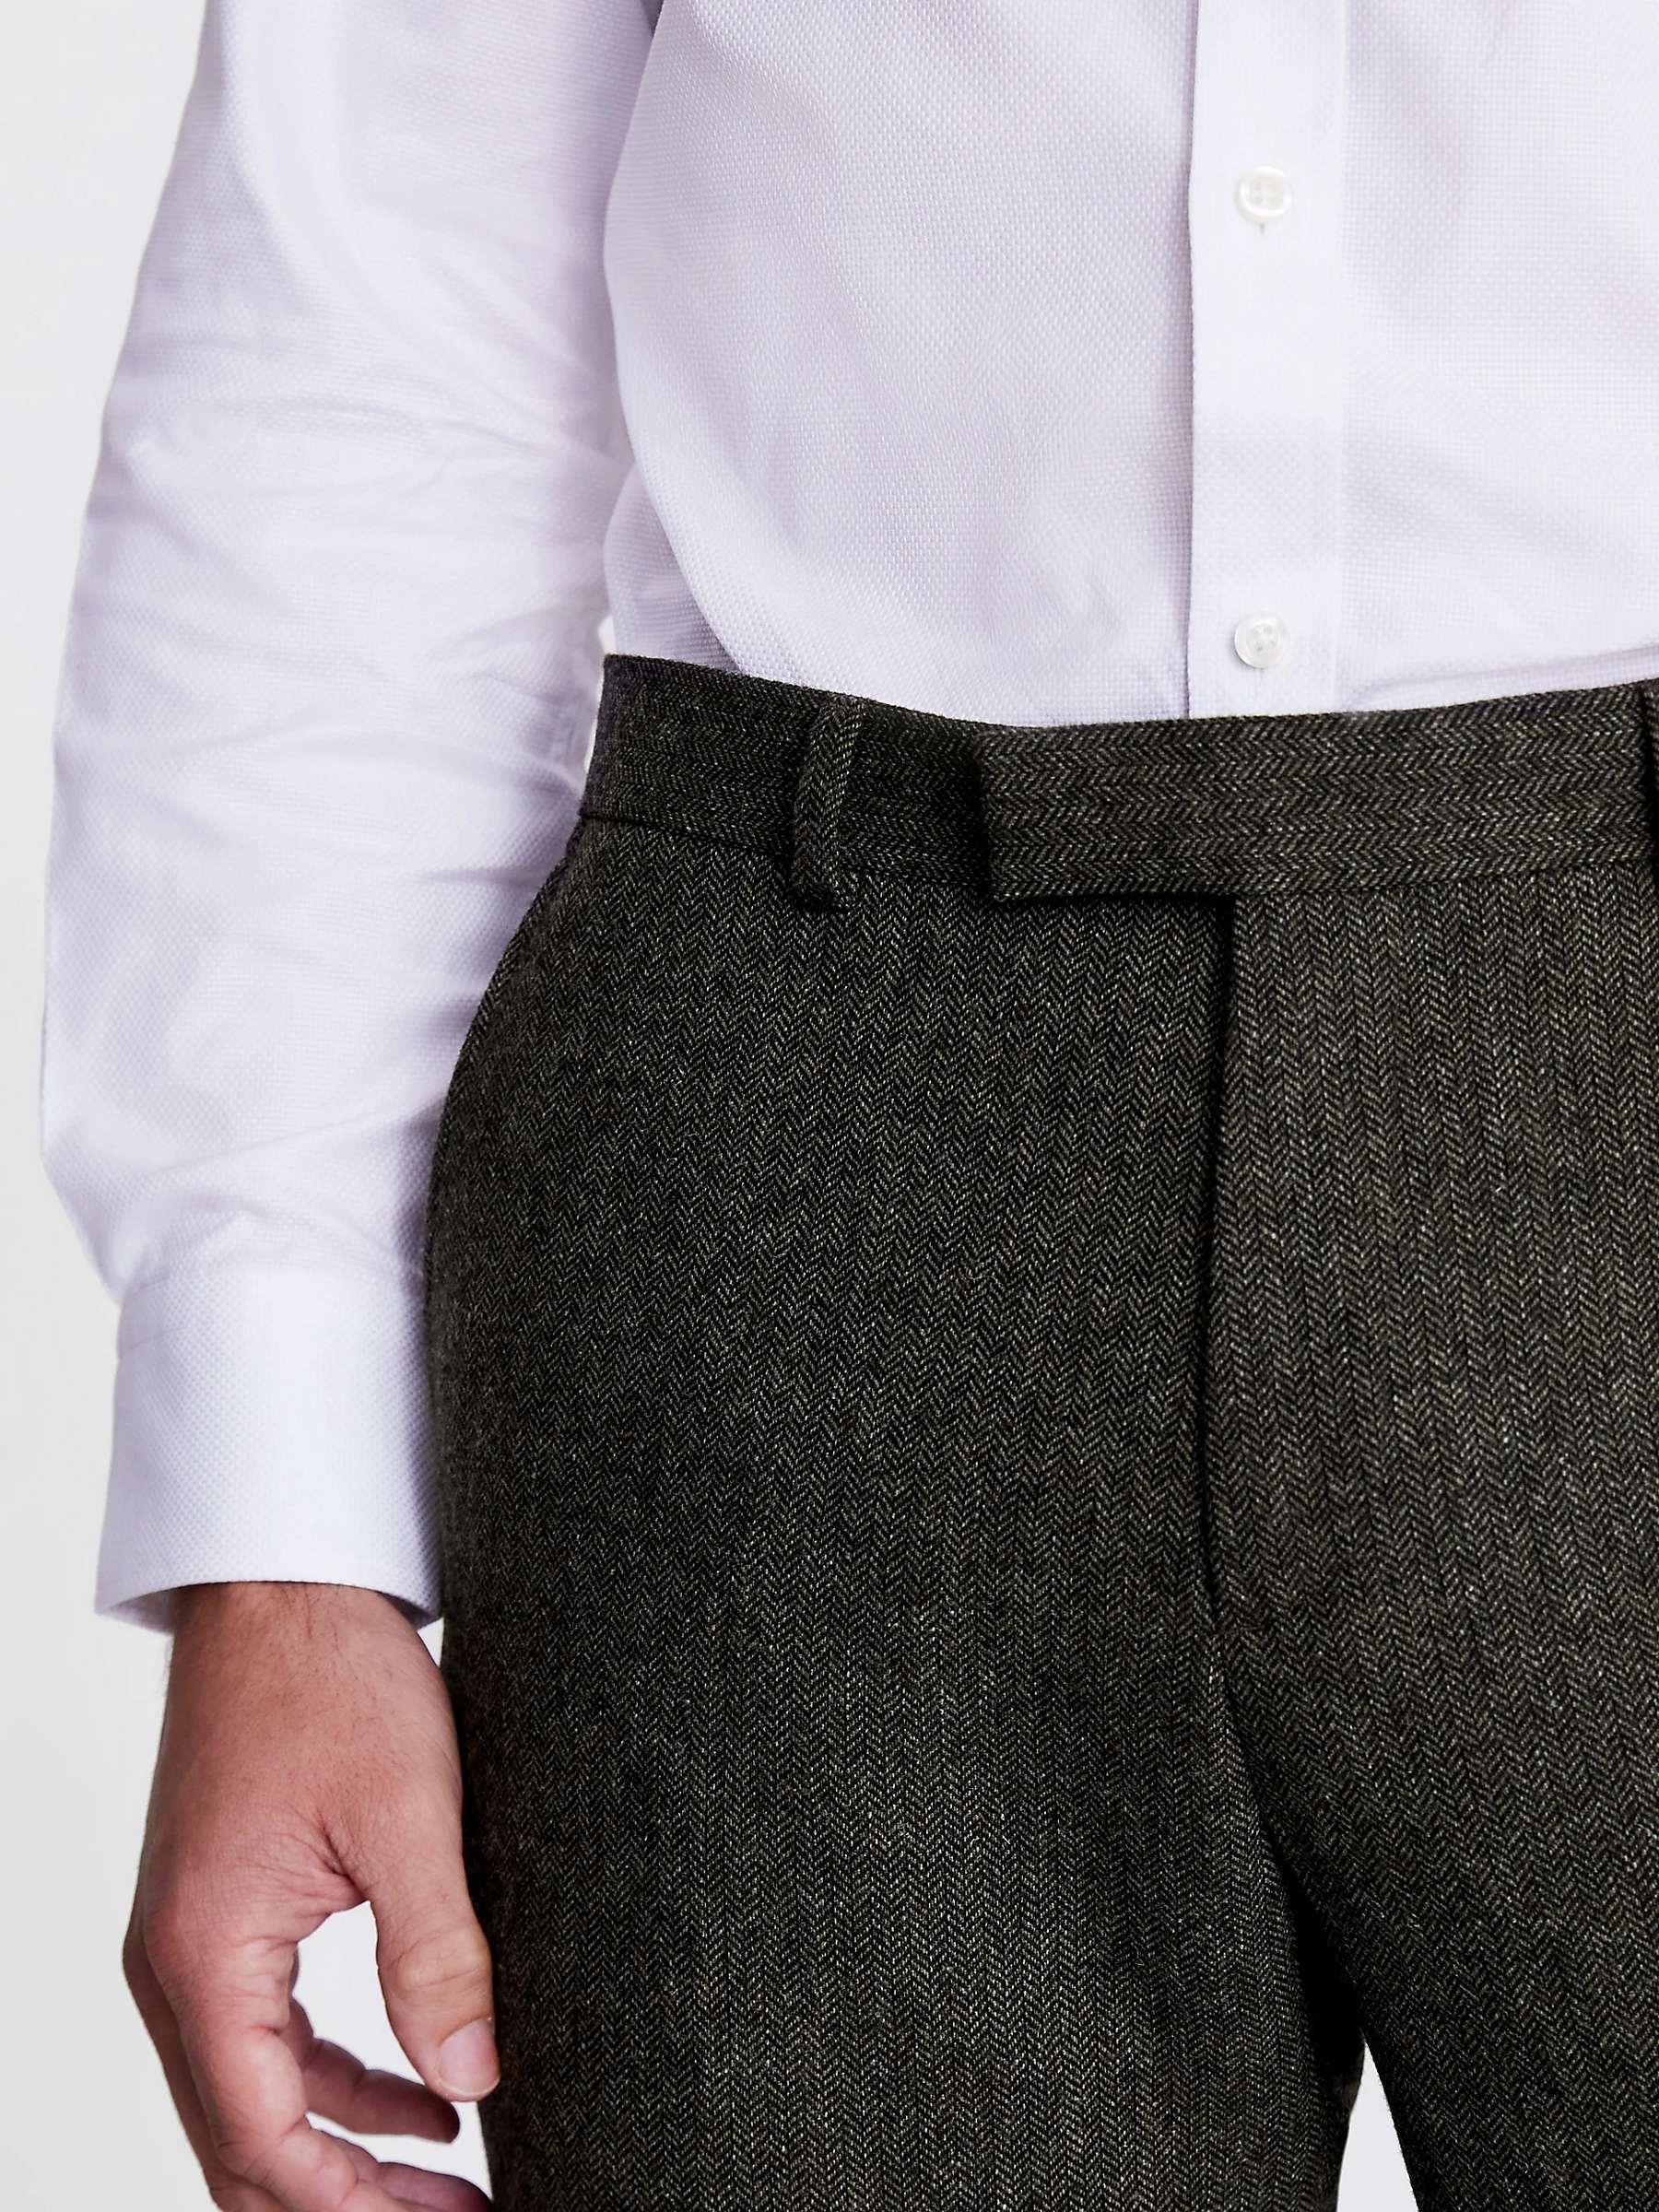 Buy Moss Tailored Fit Herringbone Tweed Trousers Online at johnlewis.com